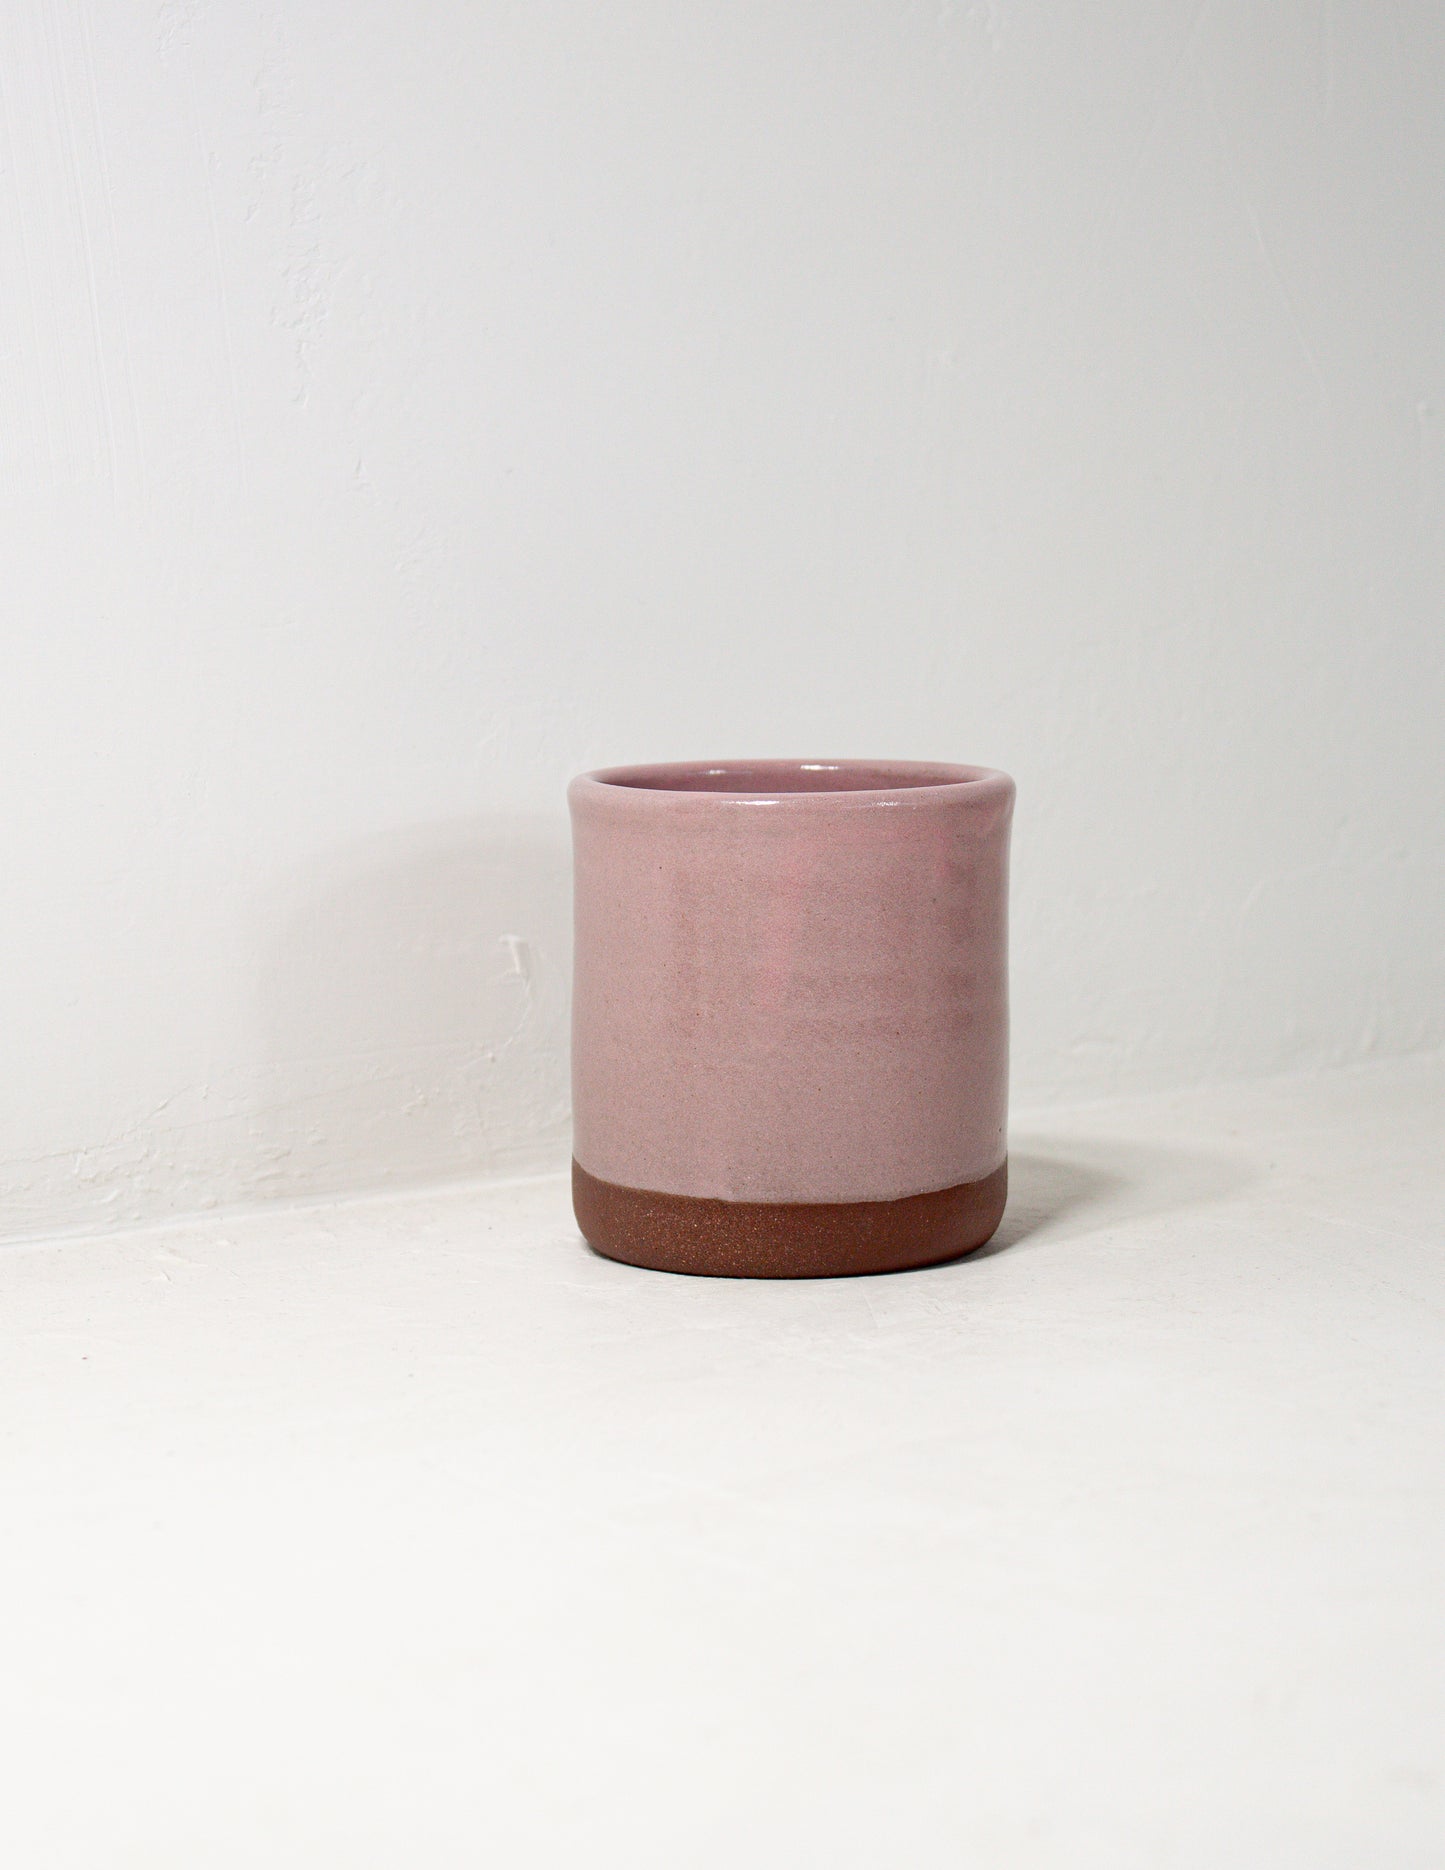 handmade tumbler glazed in pink